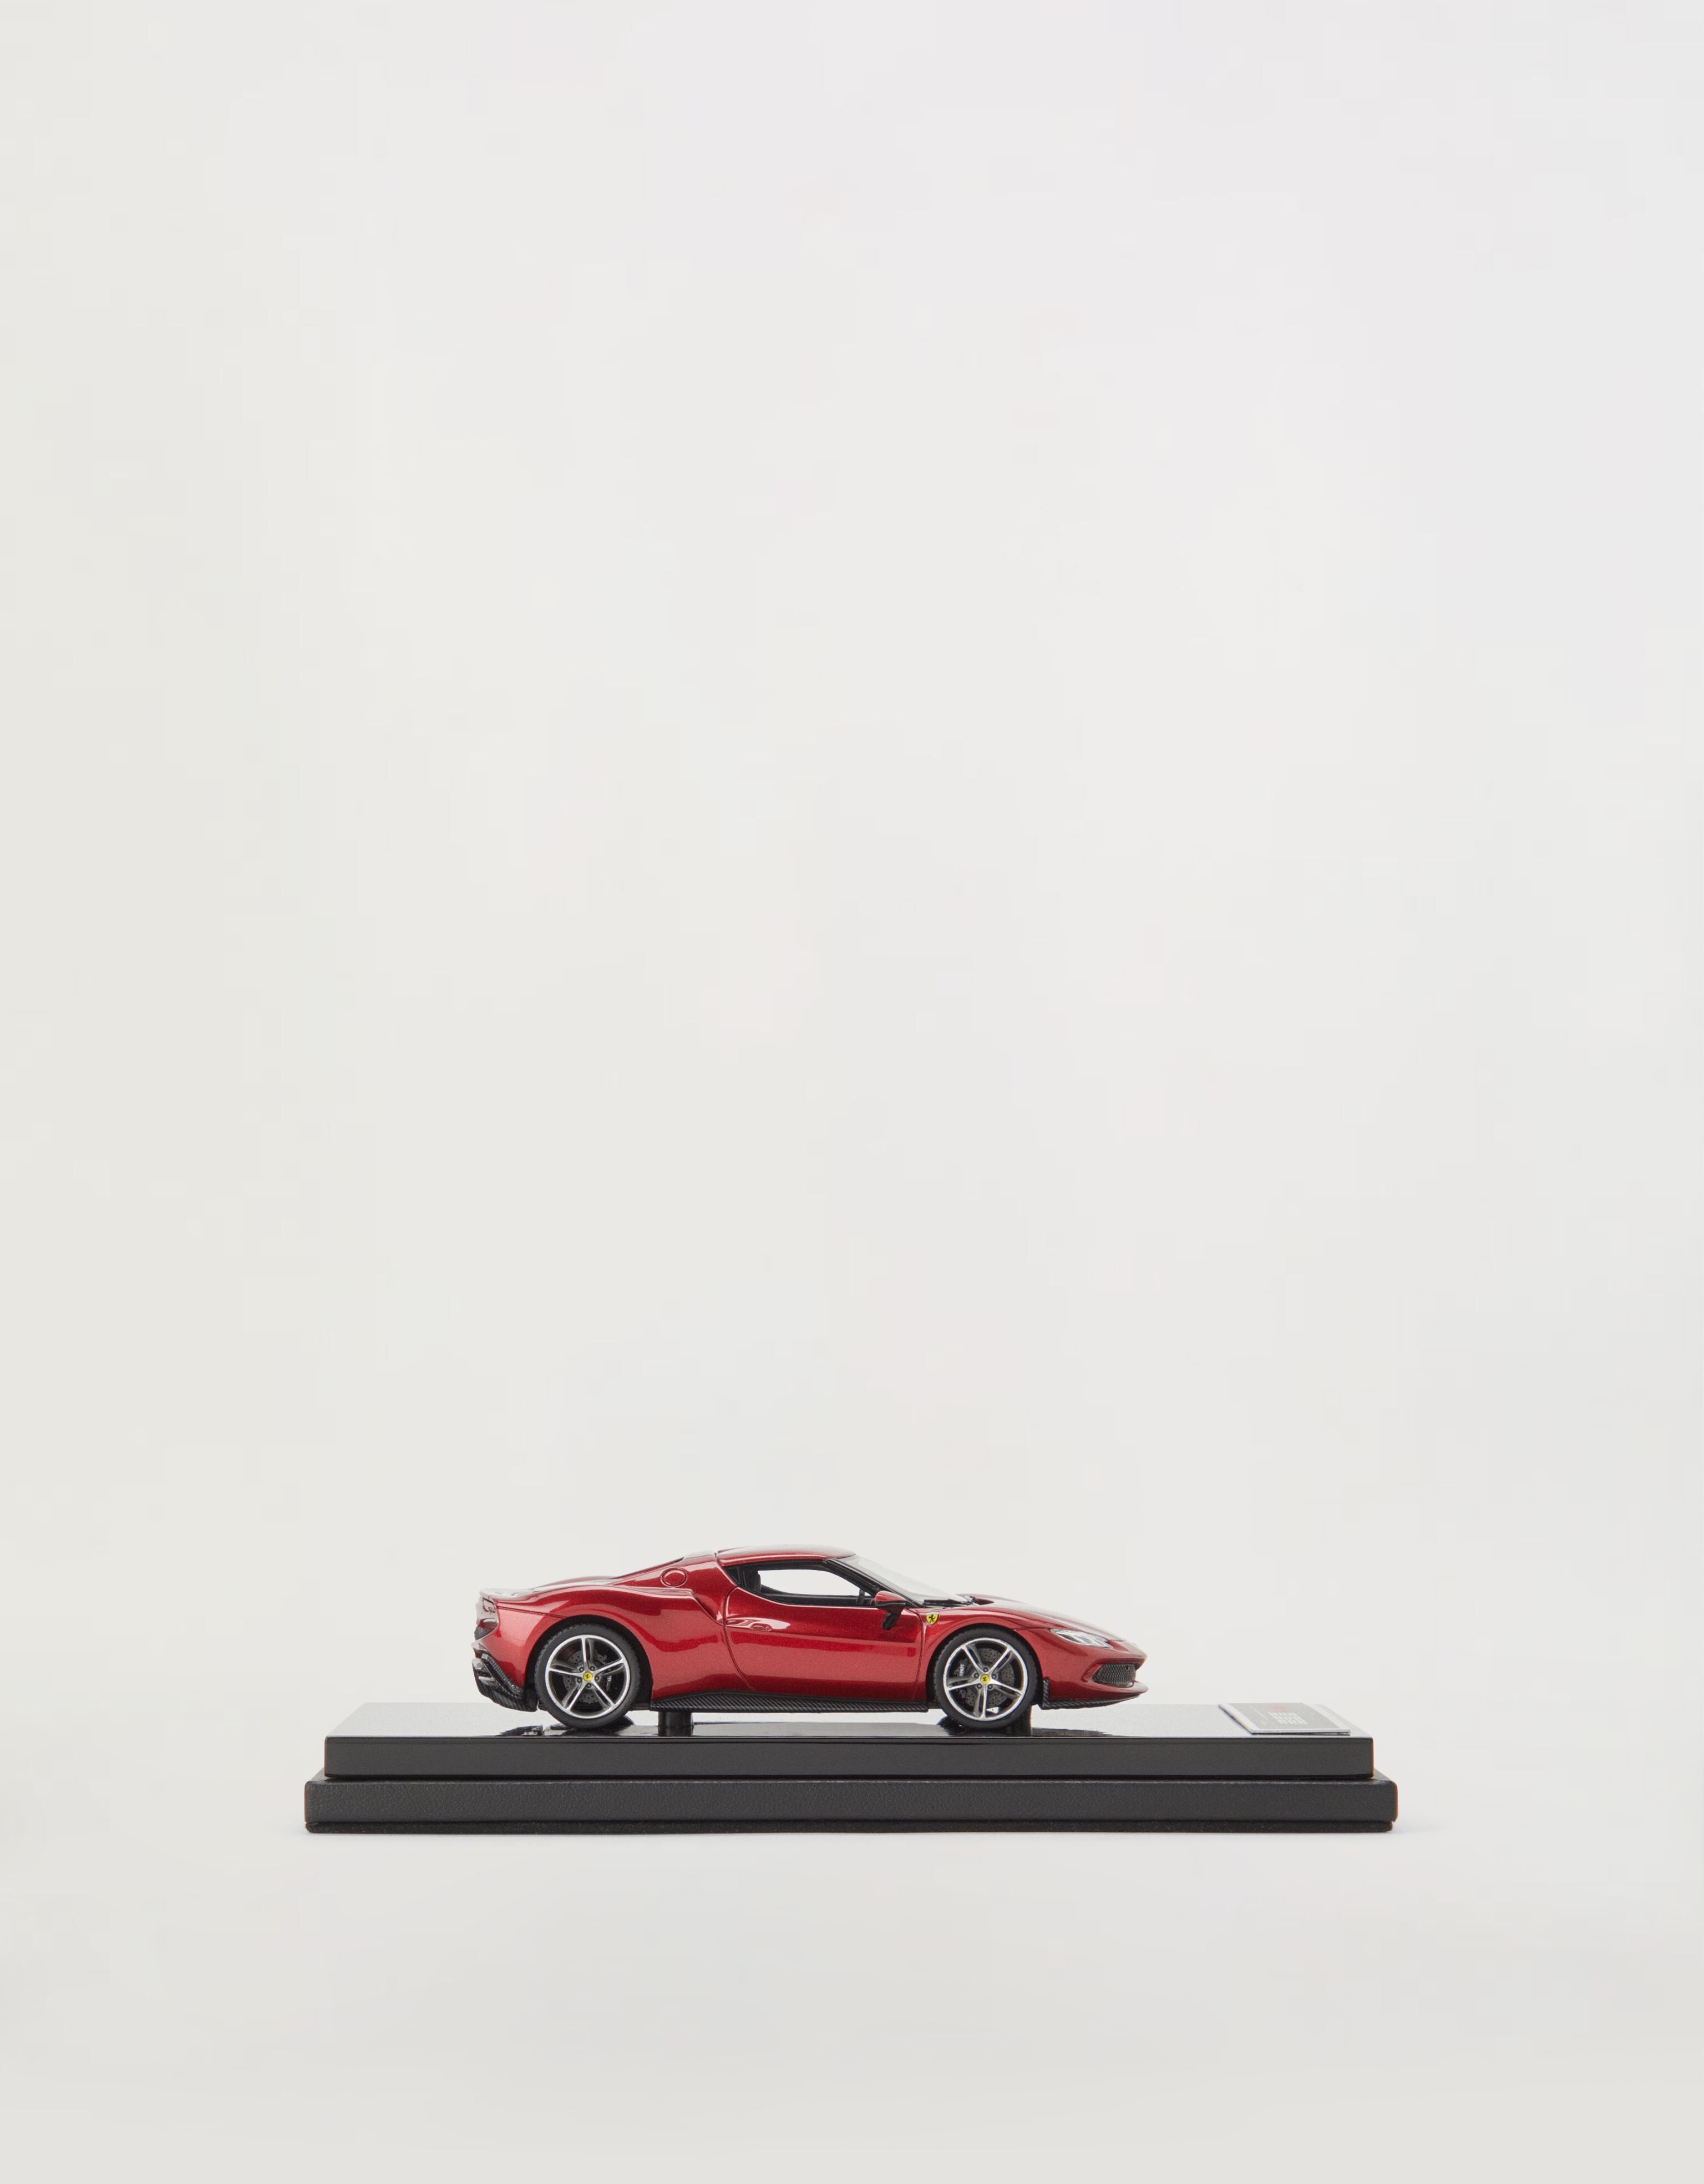 Ferrari Ferrari 296 GTB model in 1:43 scale Red F1348f